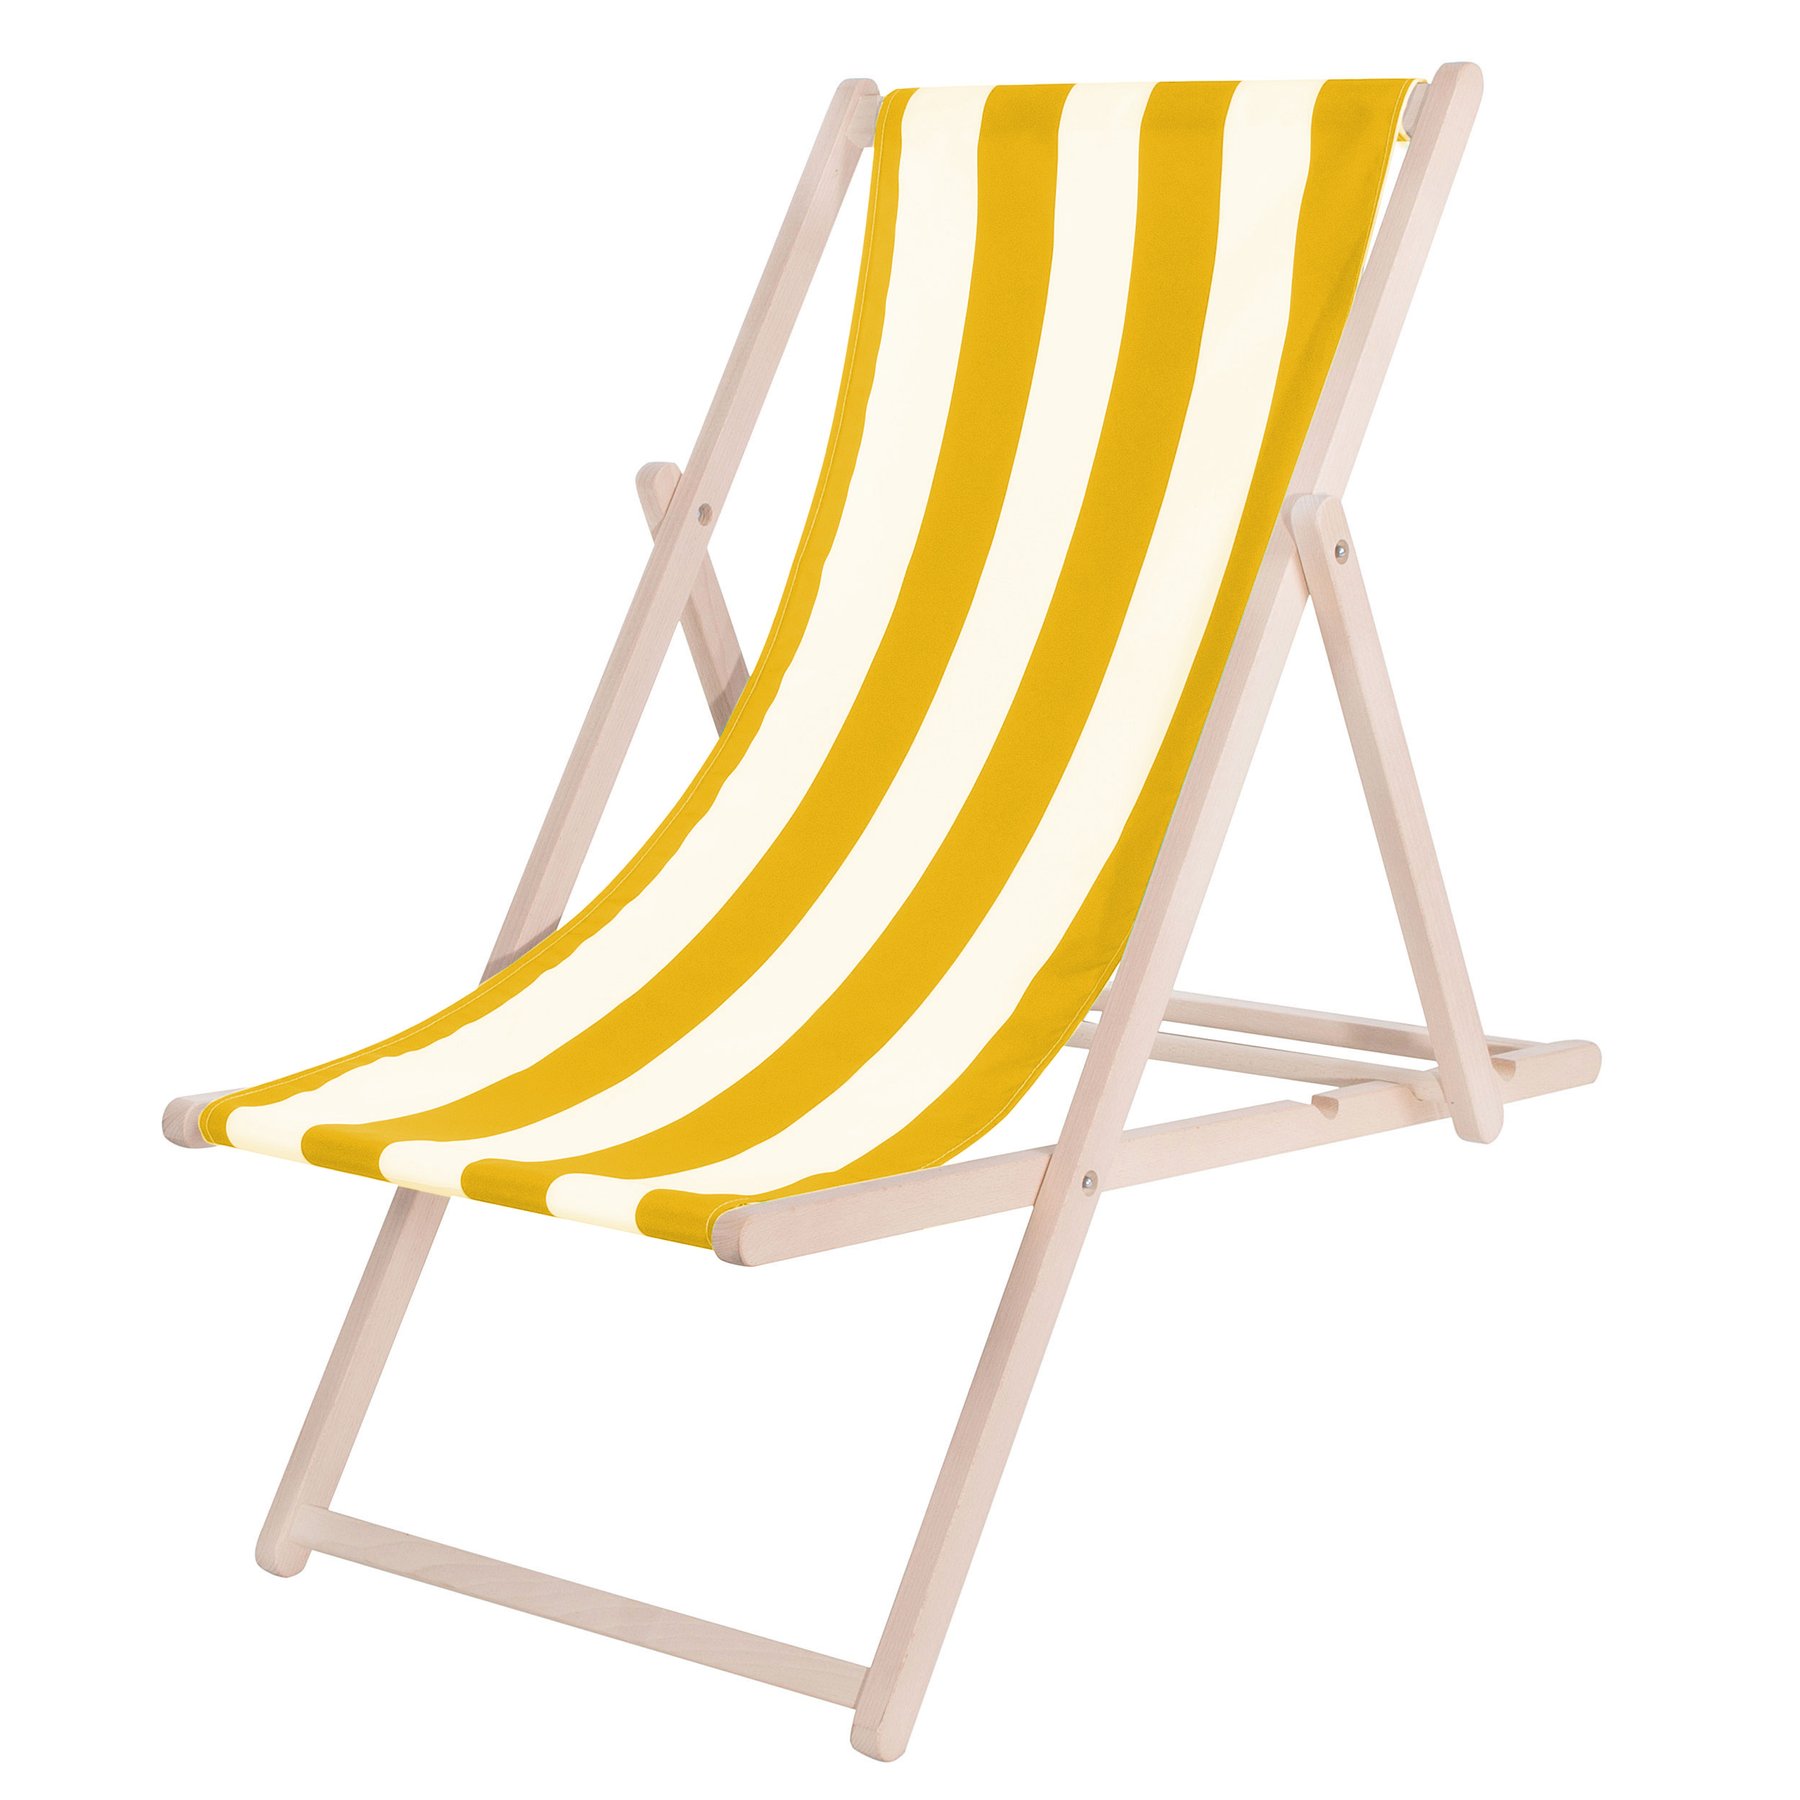 Шезлонг (крісло-лежак) дерев'яний для пляжу, тераси та саду Springos DC0010 DSWY